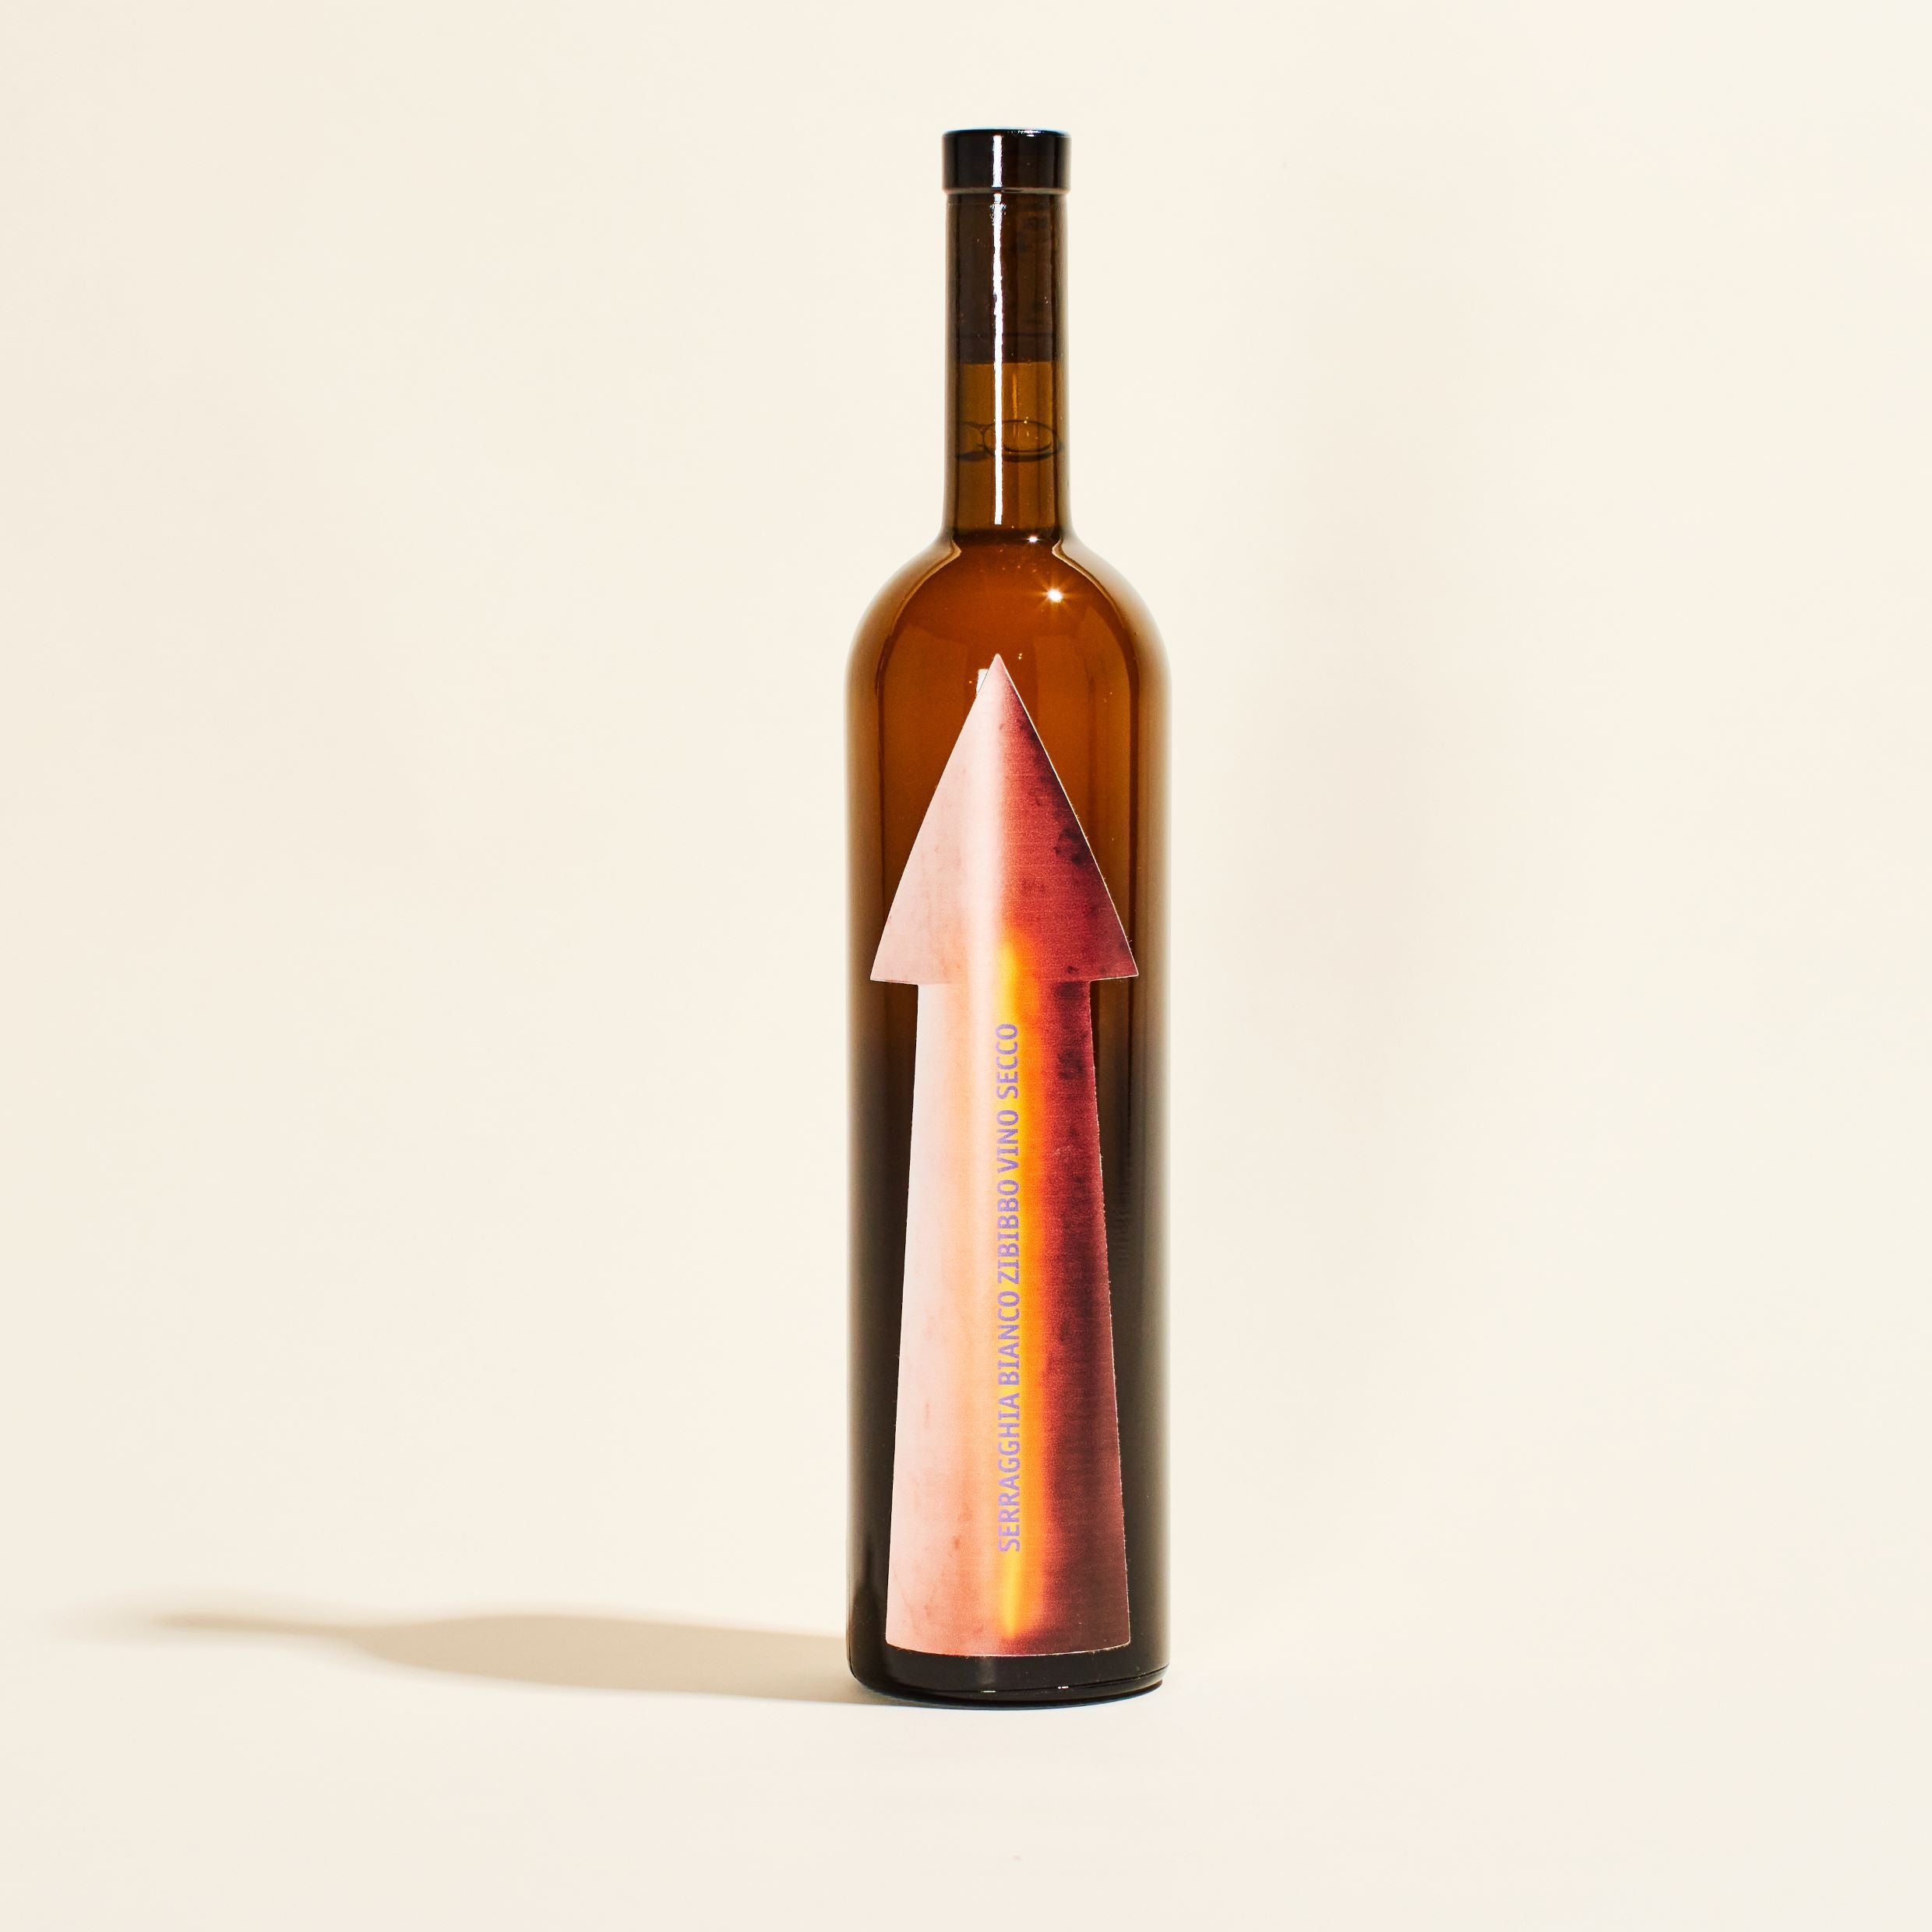 zibbibo gabrio bini pantelleria sicily italy  natural orange wine